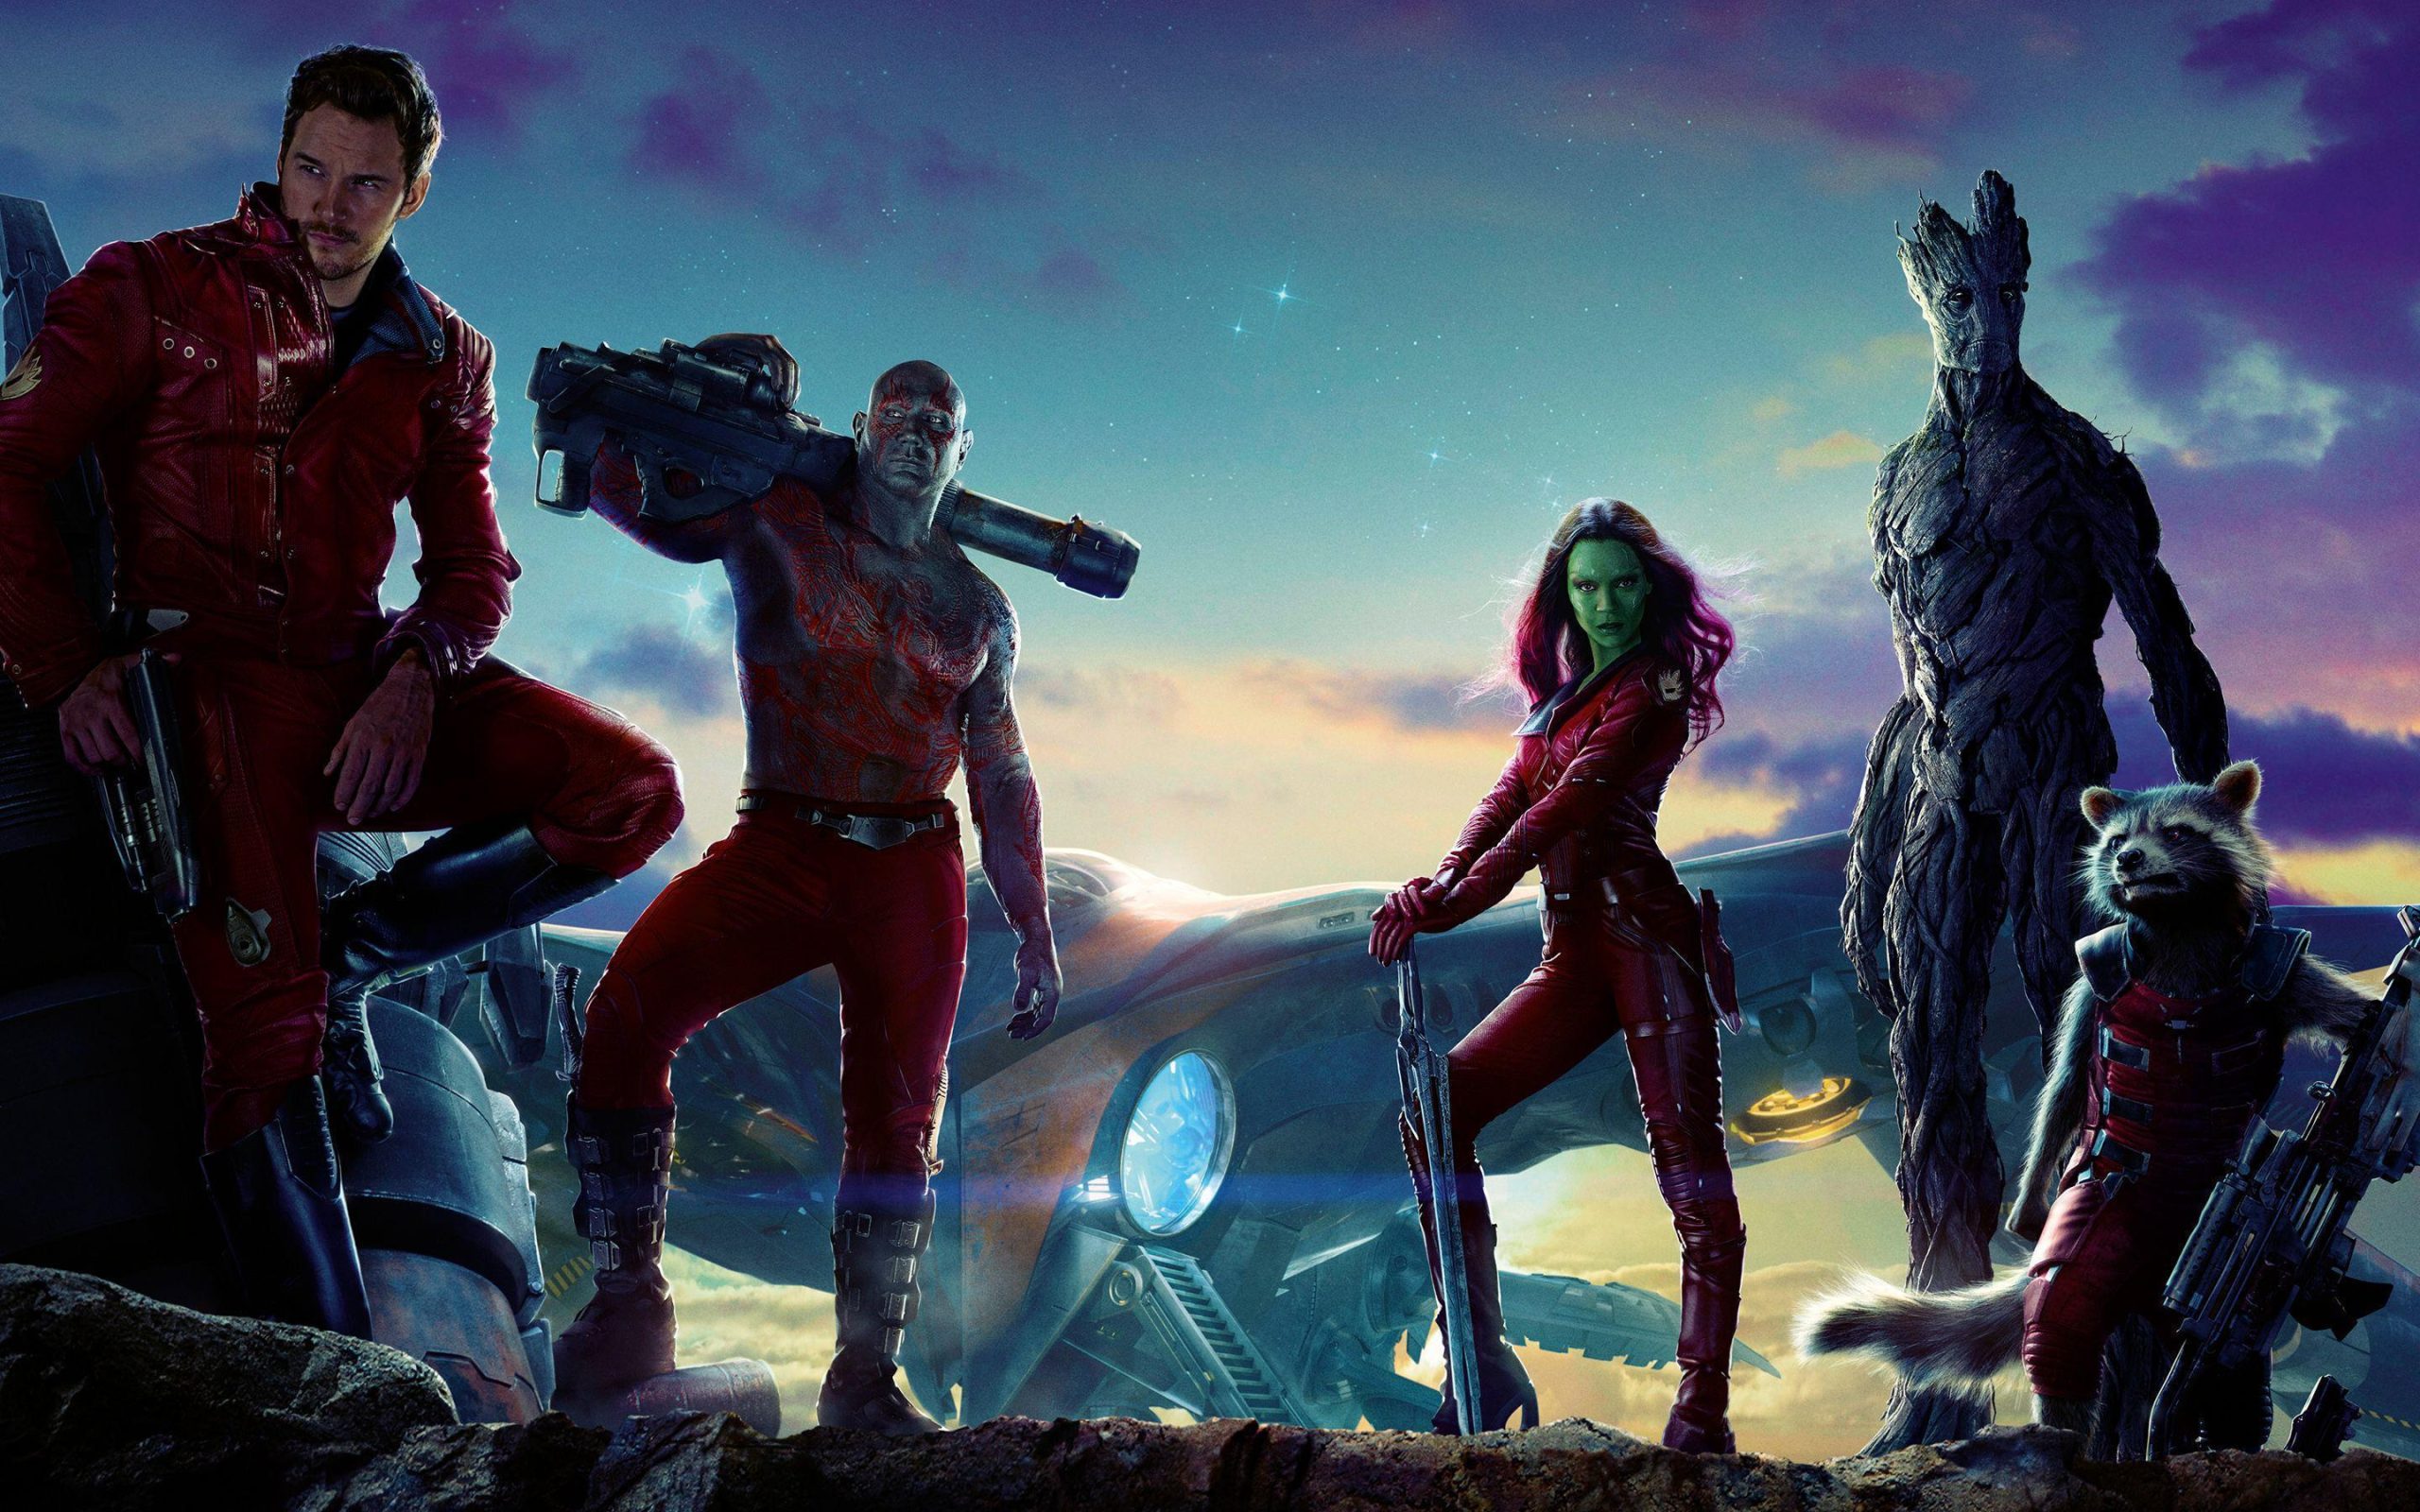 Guardians Of The Galaxy Villains Wallpaper 4k For Laptop, Guardians Of The Galaxy Villains, Movies